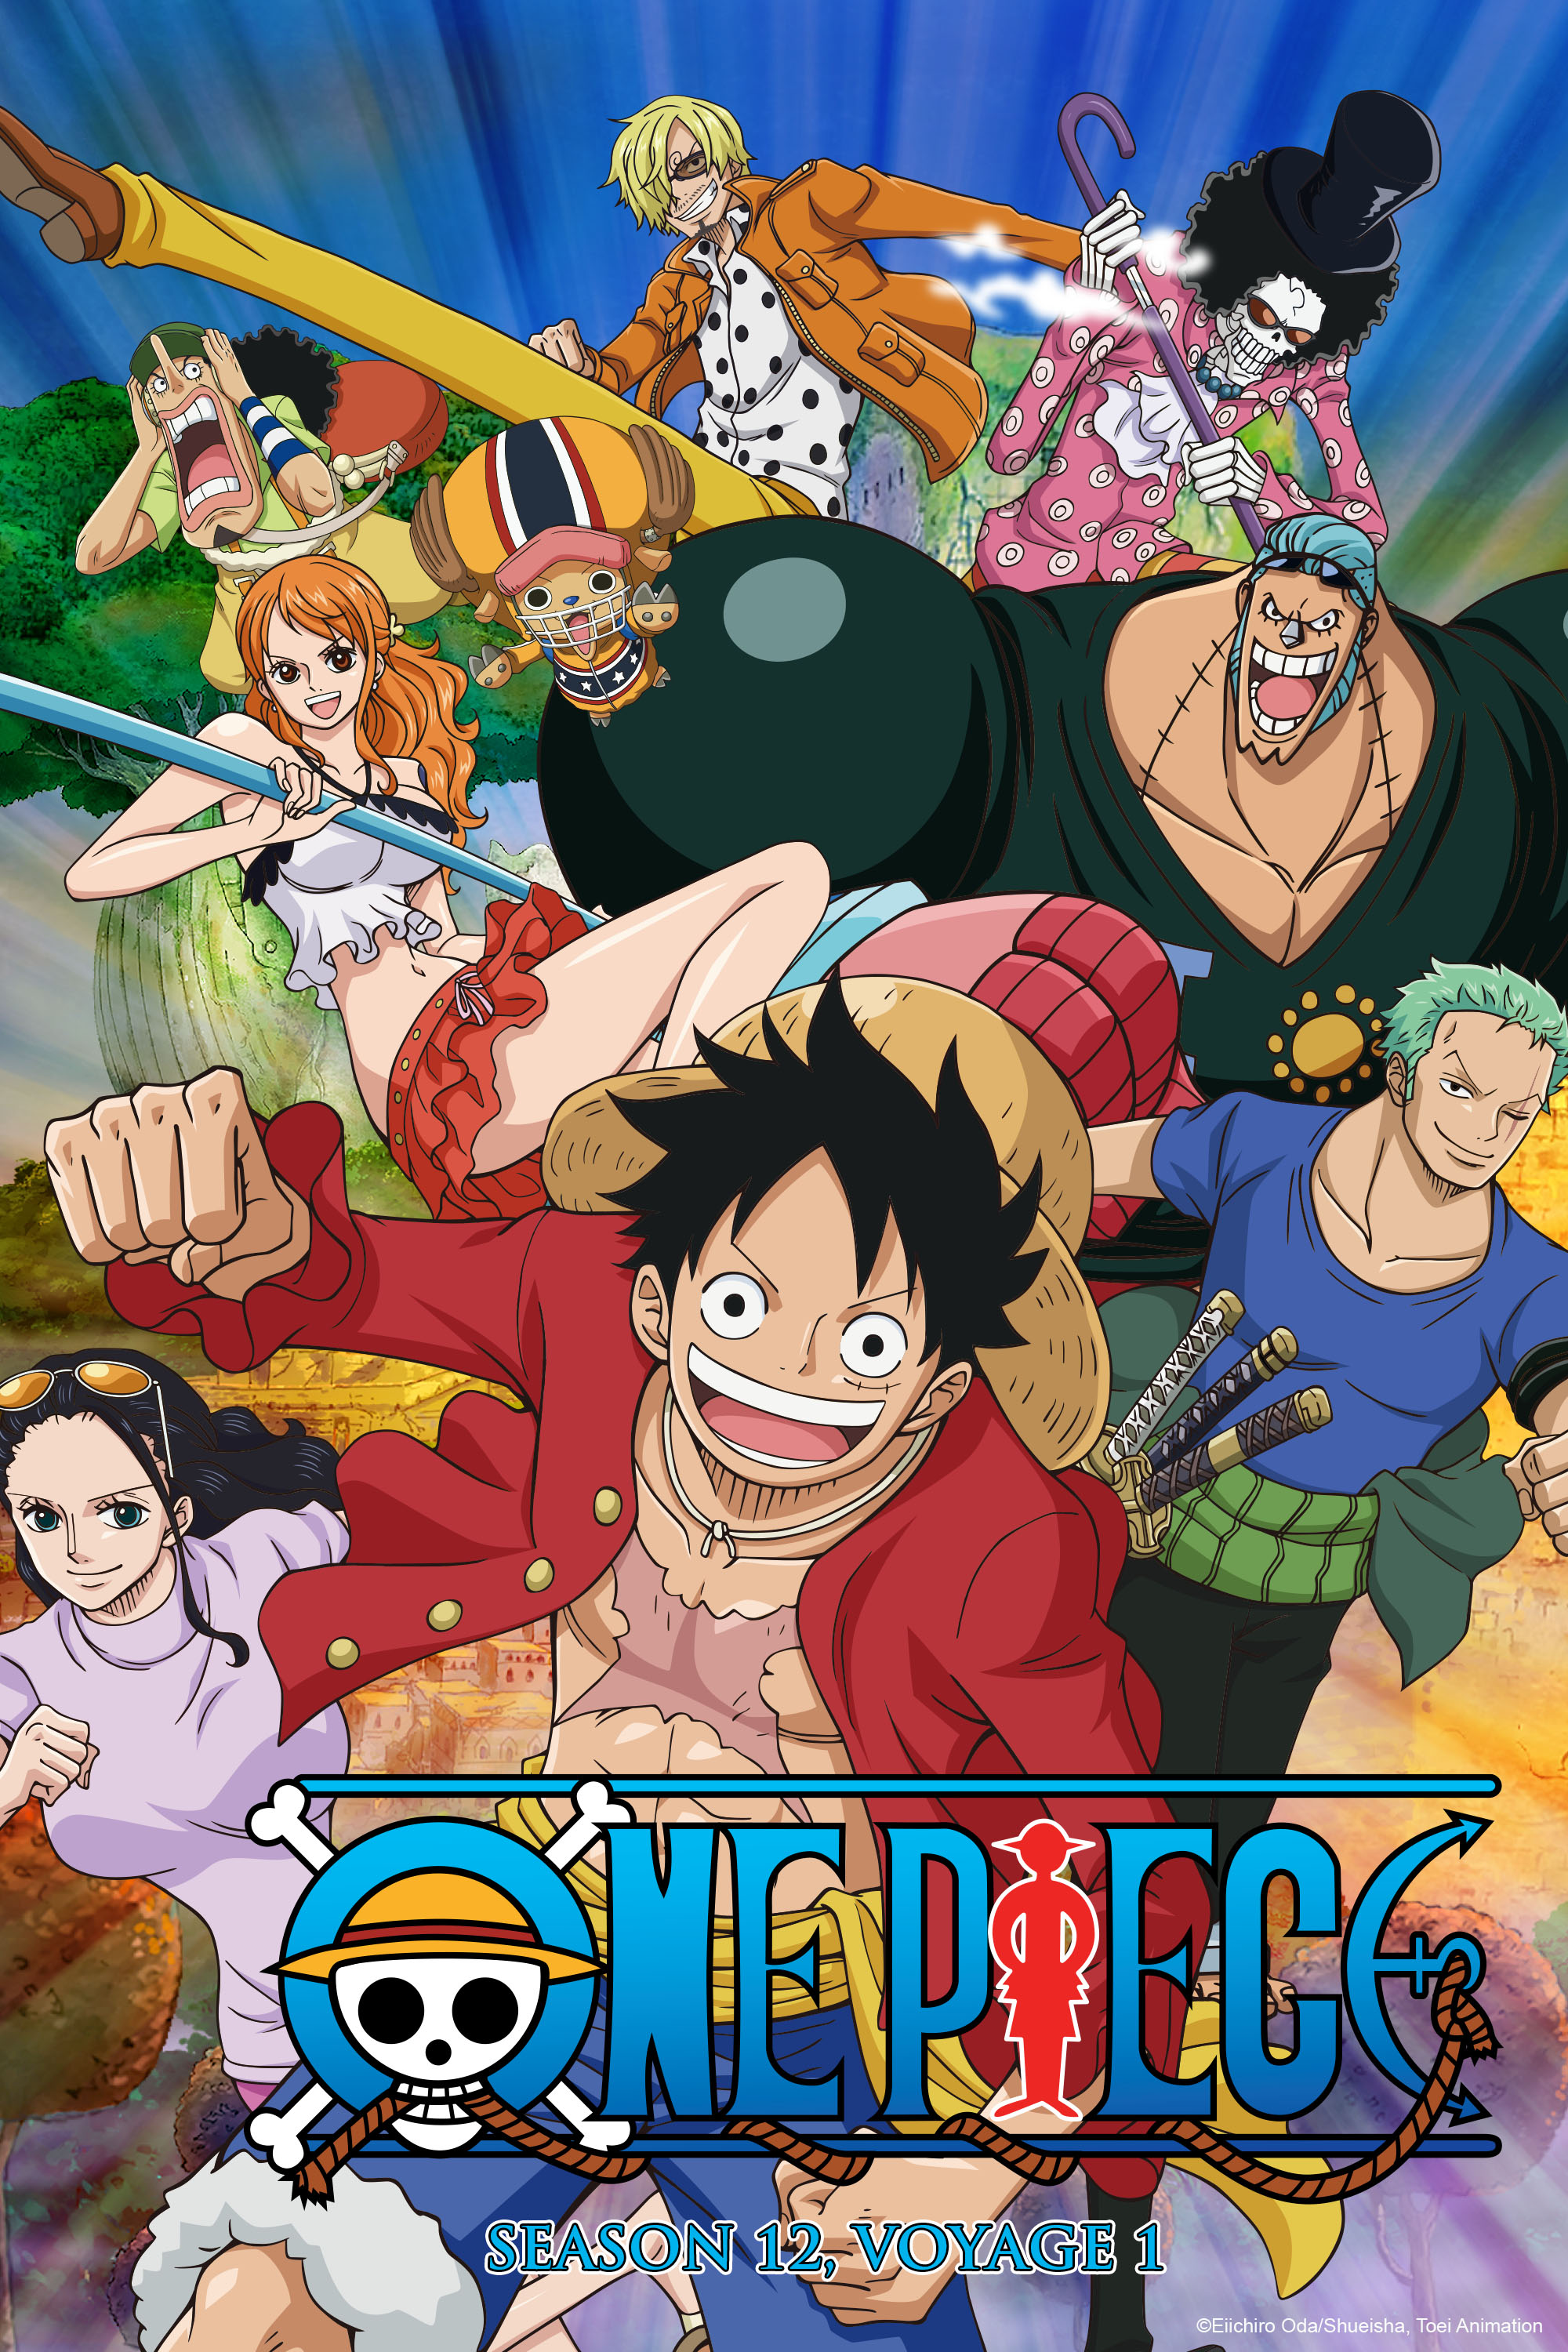 Melhores episódios de One Piece em notas do IMDB #onepiece #onepiecean